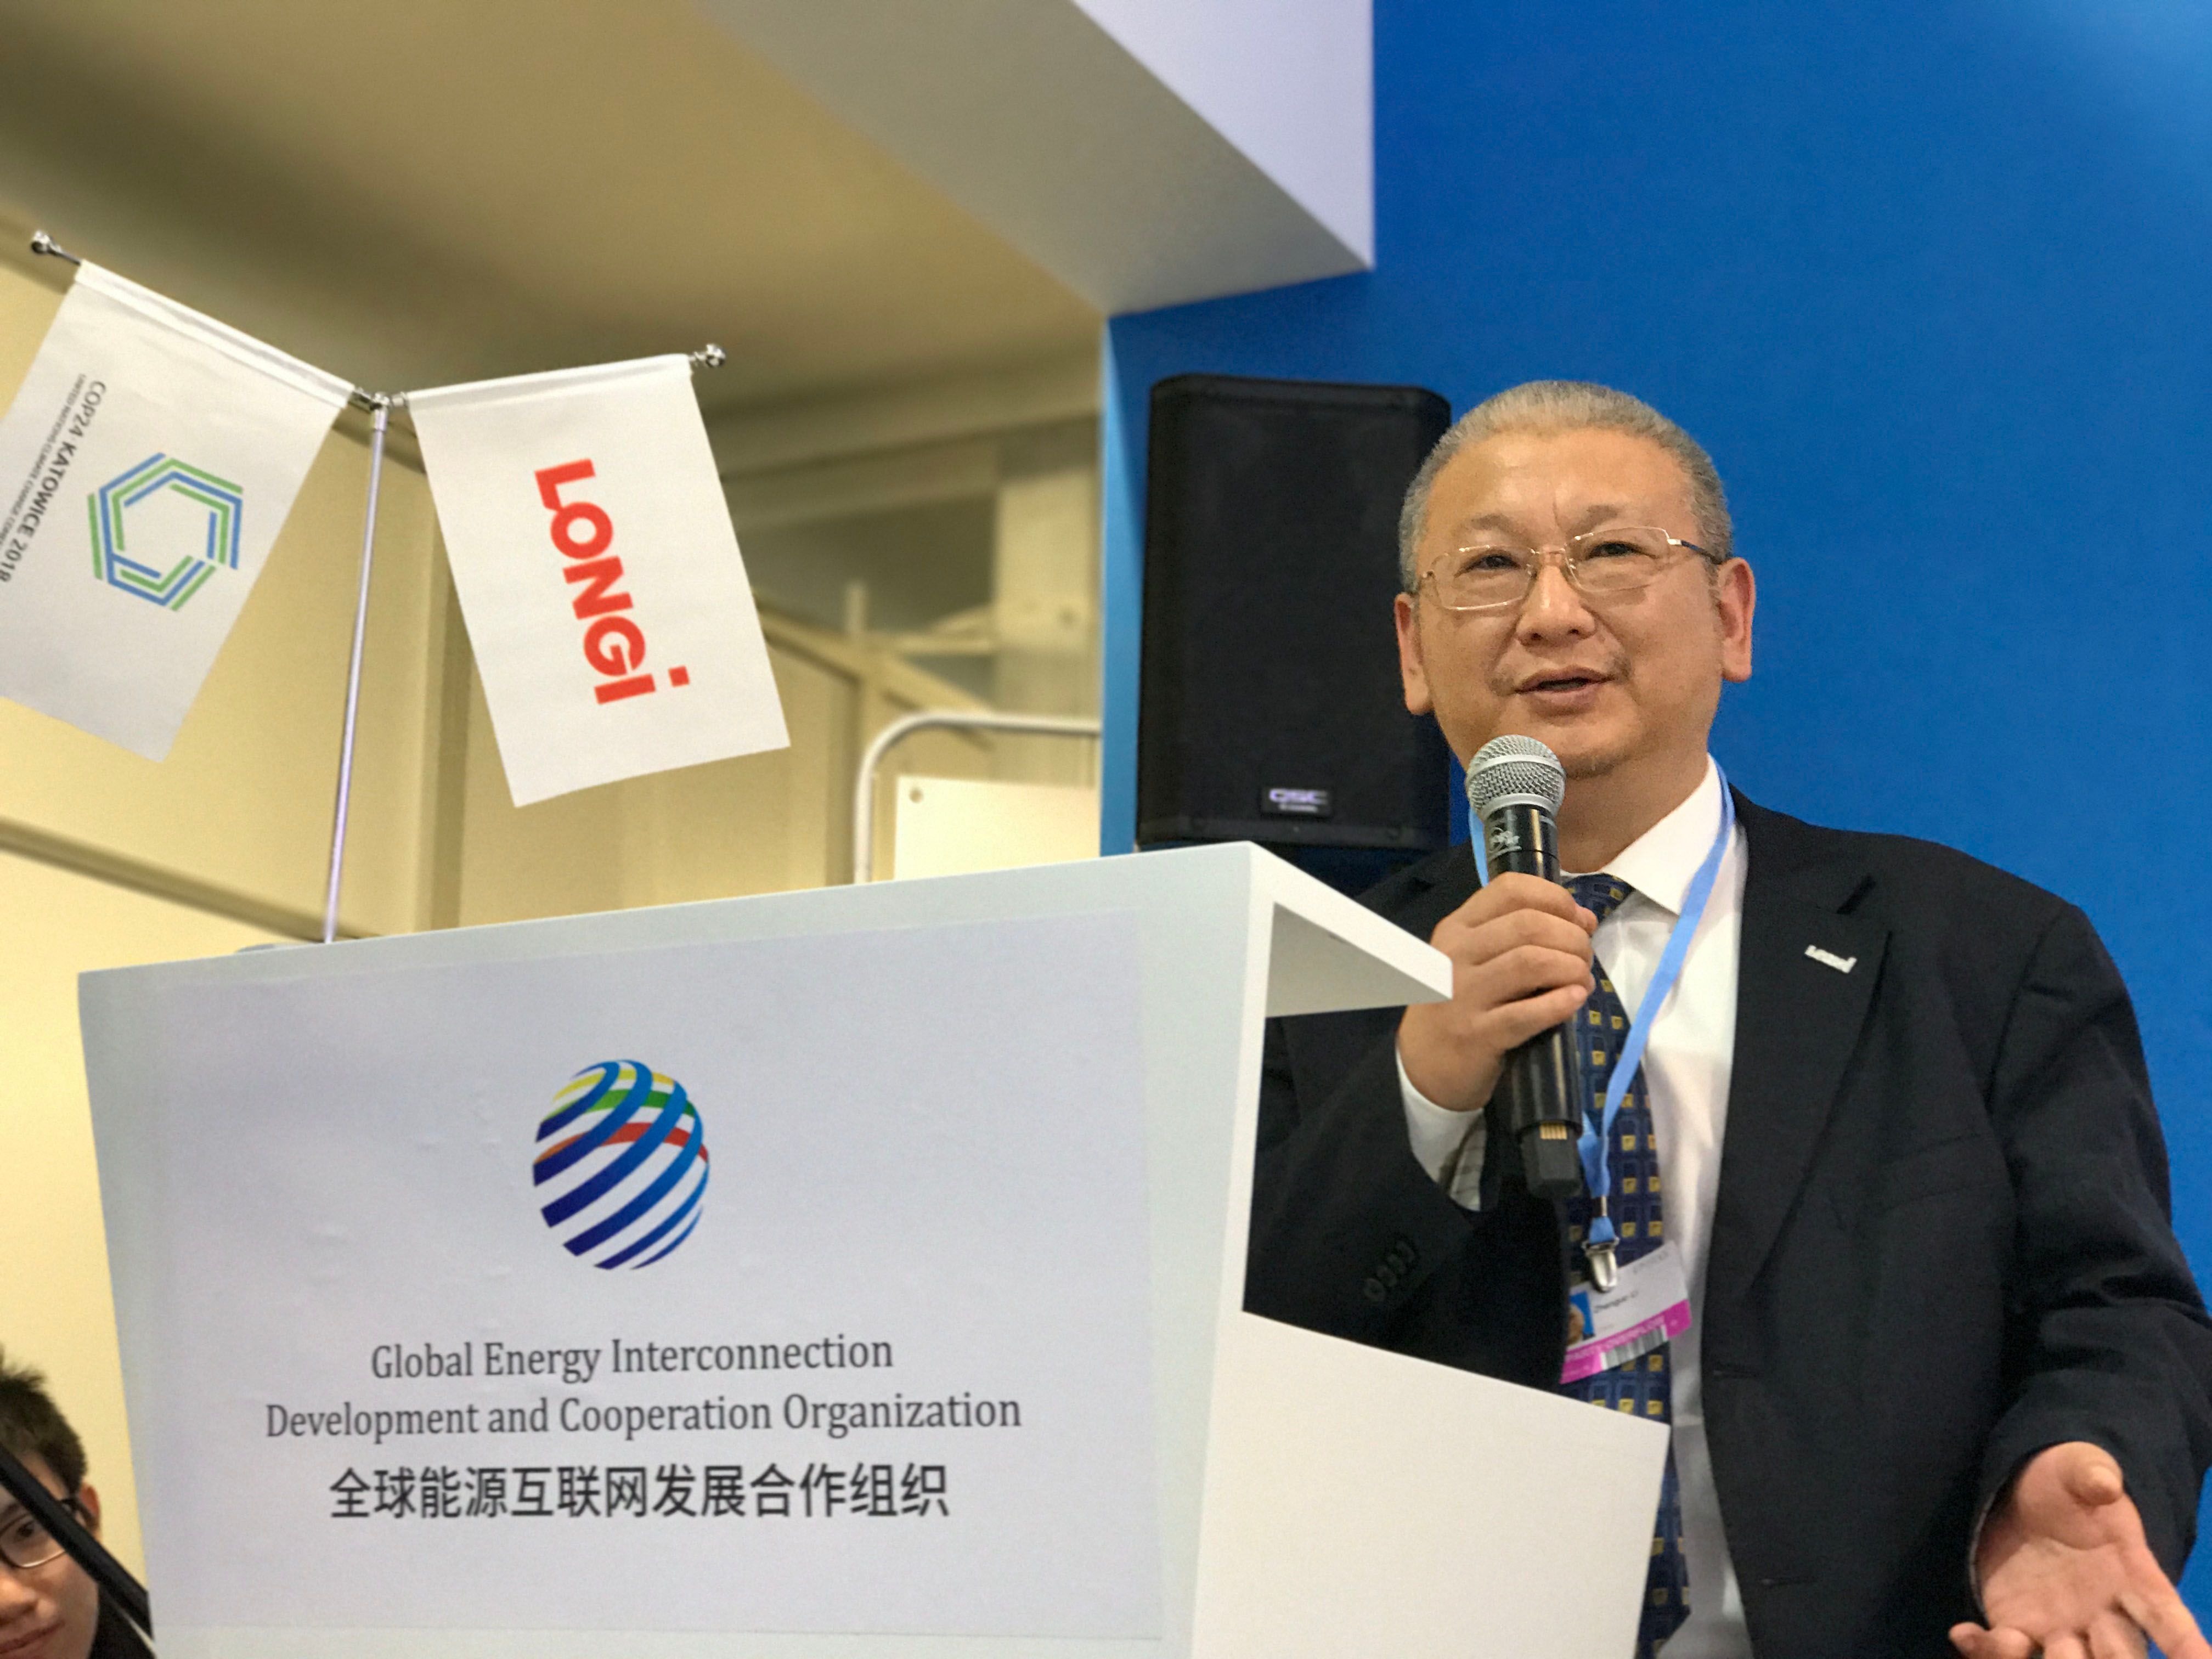 Li Zhenguo, Gründer und Präsident von LONGi, nahm an 24. Klimawandelkonferenz der Vereinten Nationen teil und hielt eine Grundsatzrede